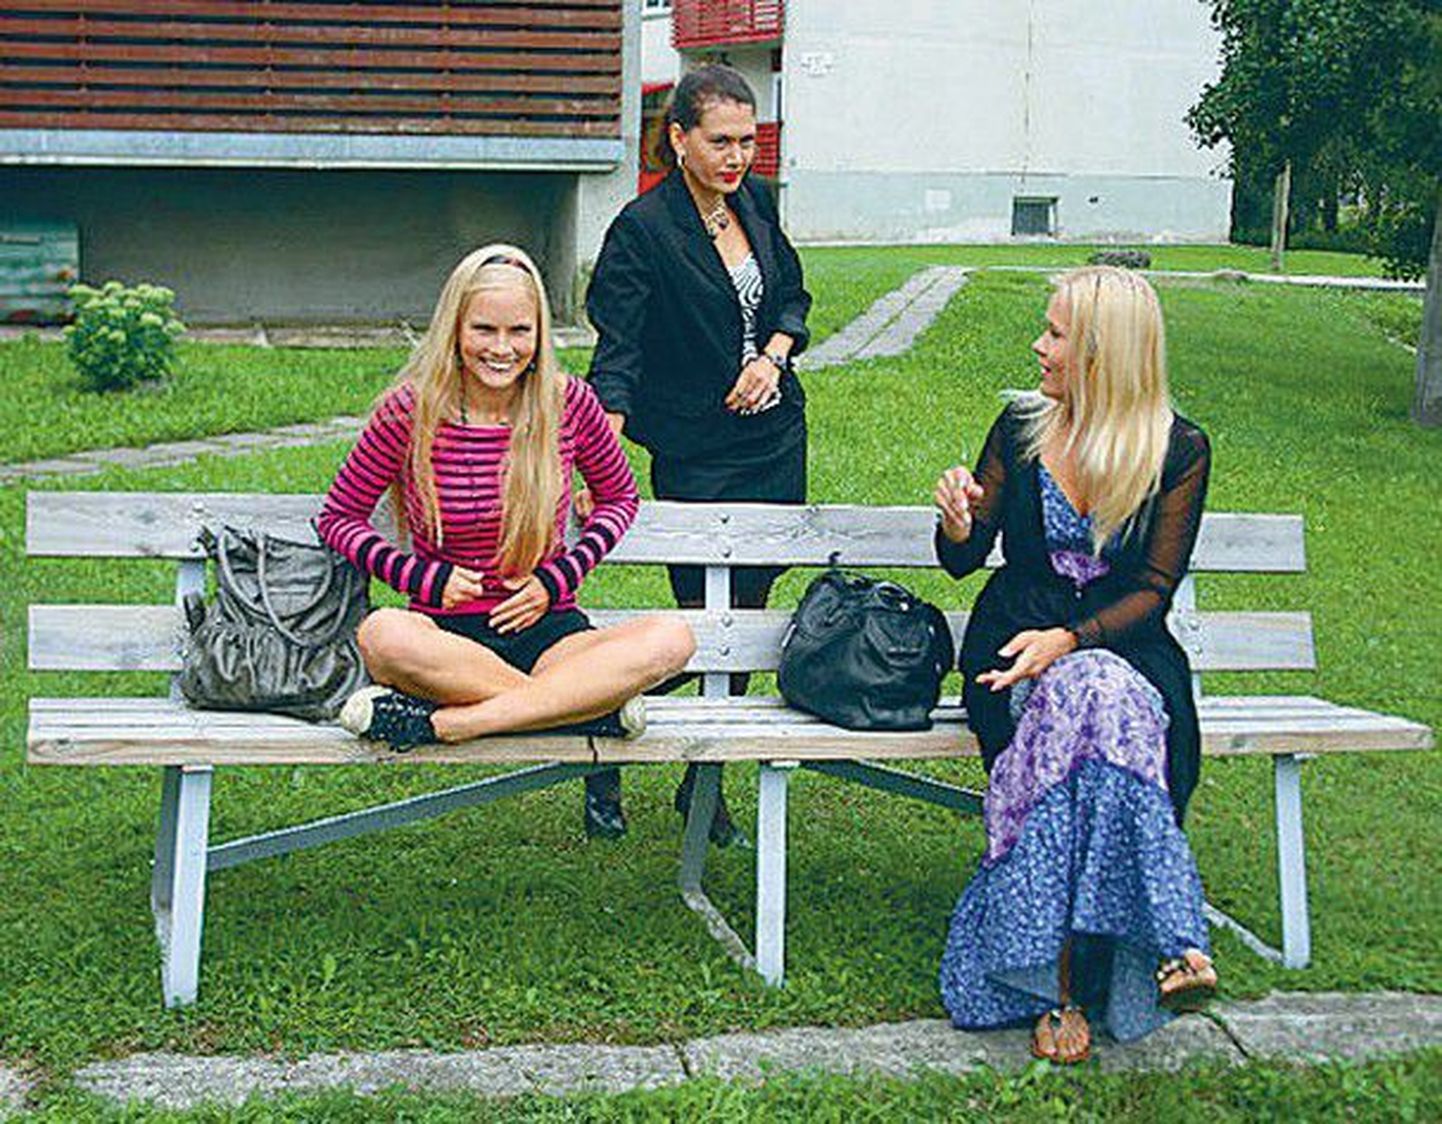 Poolõed Kertu (Liis Haab, vasakult), Mari (Elisabet Tamm) ja Piret (Inga Allik) arutavad, mida haiglasse sattunud halvatud emaga ette võtta.